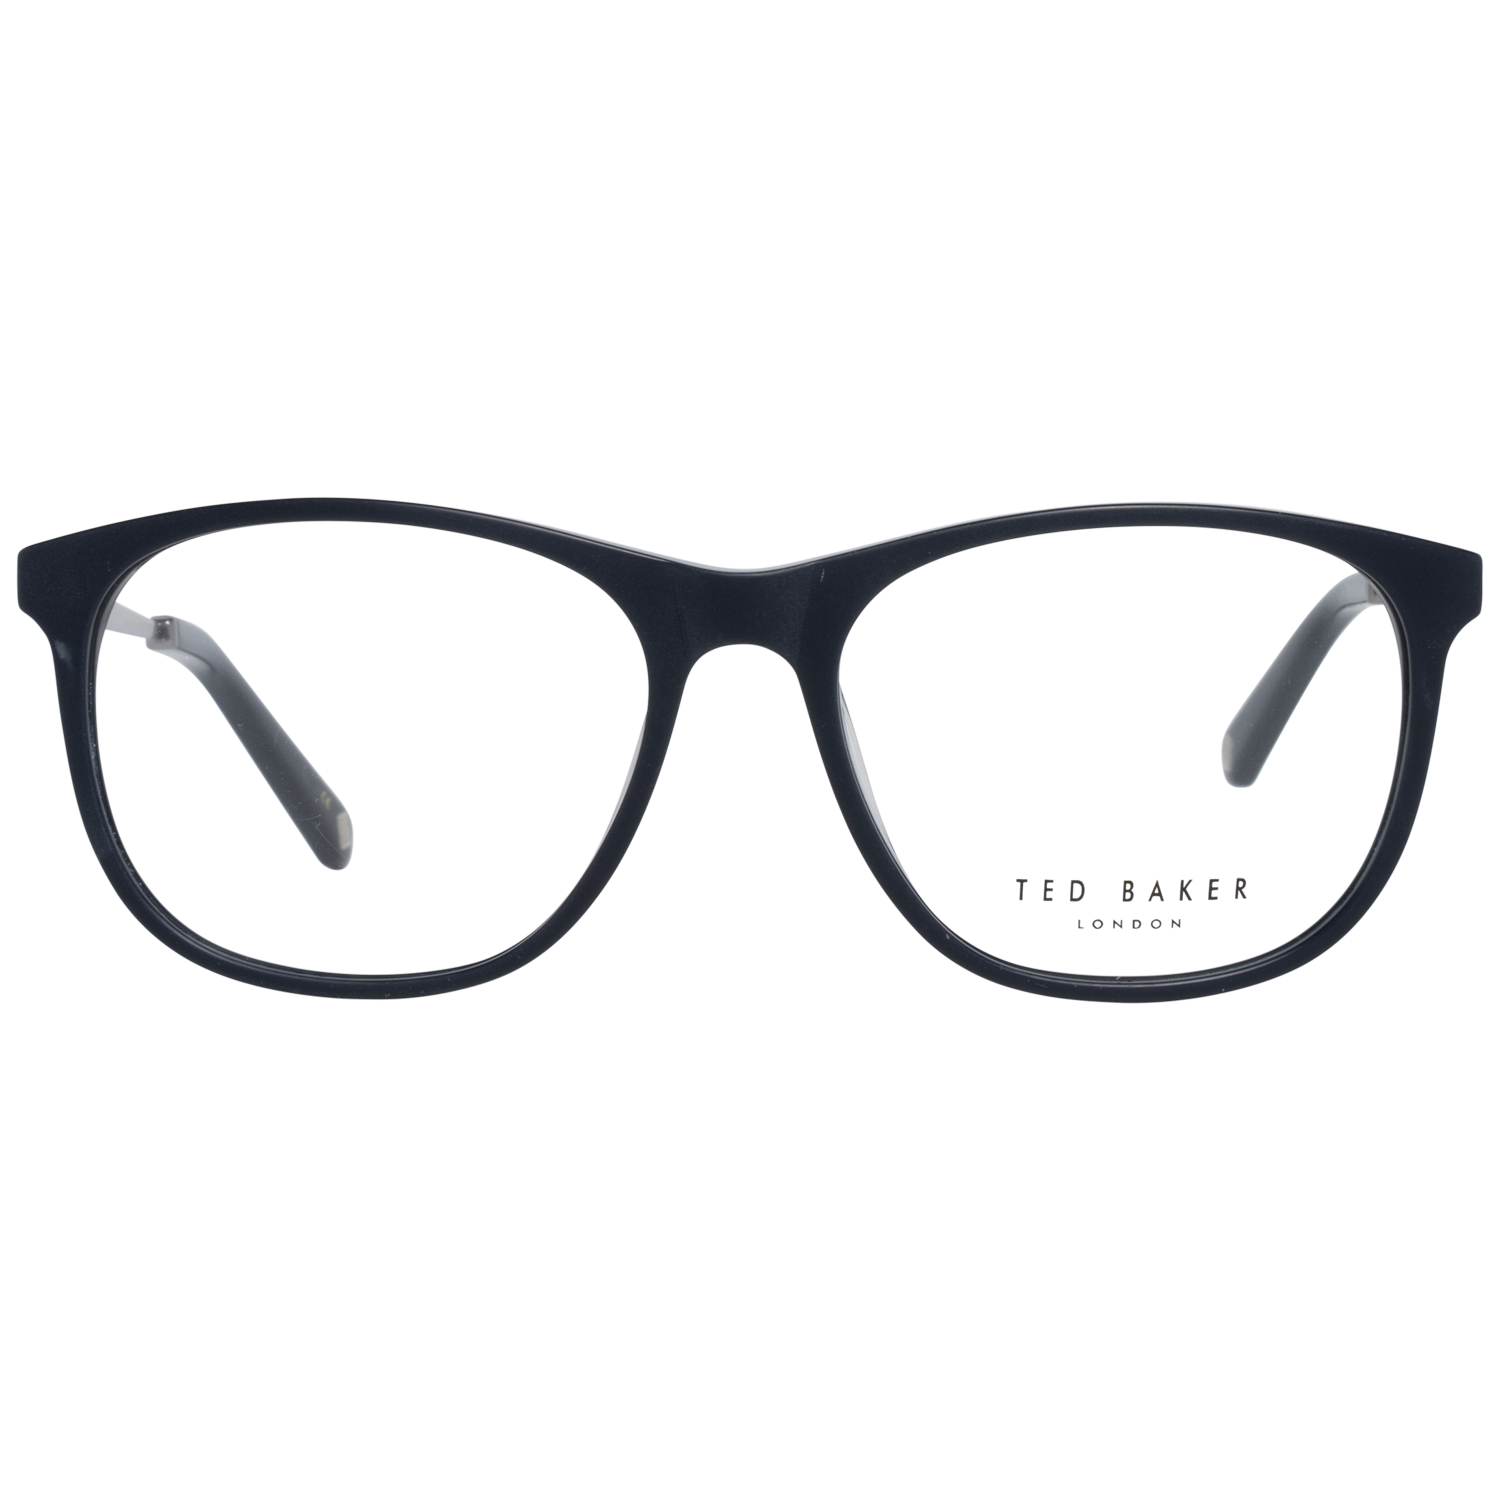 Ted Baker Frames Ted Baker Optical Frame Prescription Glasses TB8191 672 54 Beale Eyeglasses Eyewear UK USA Australia 